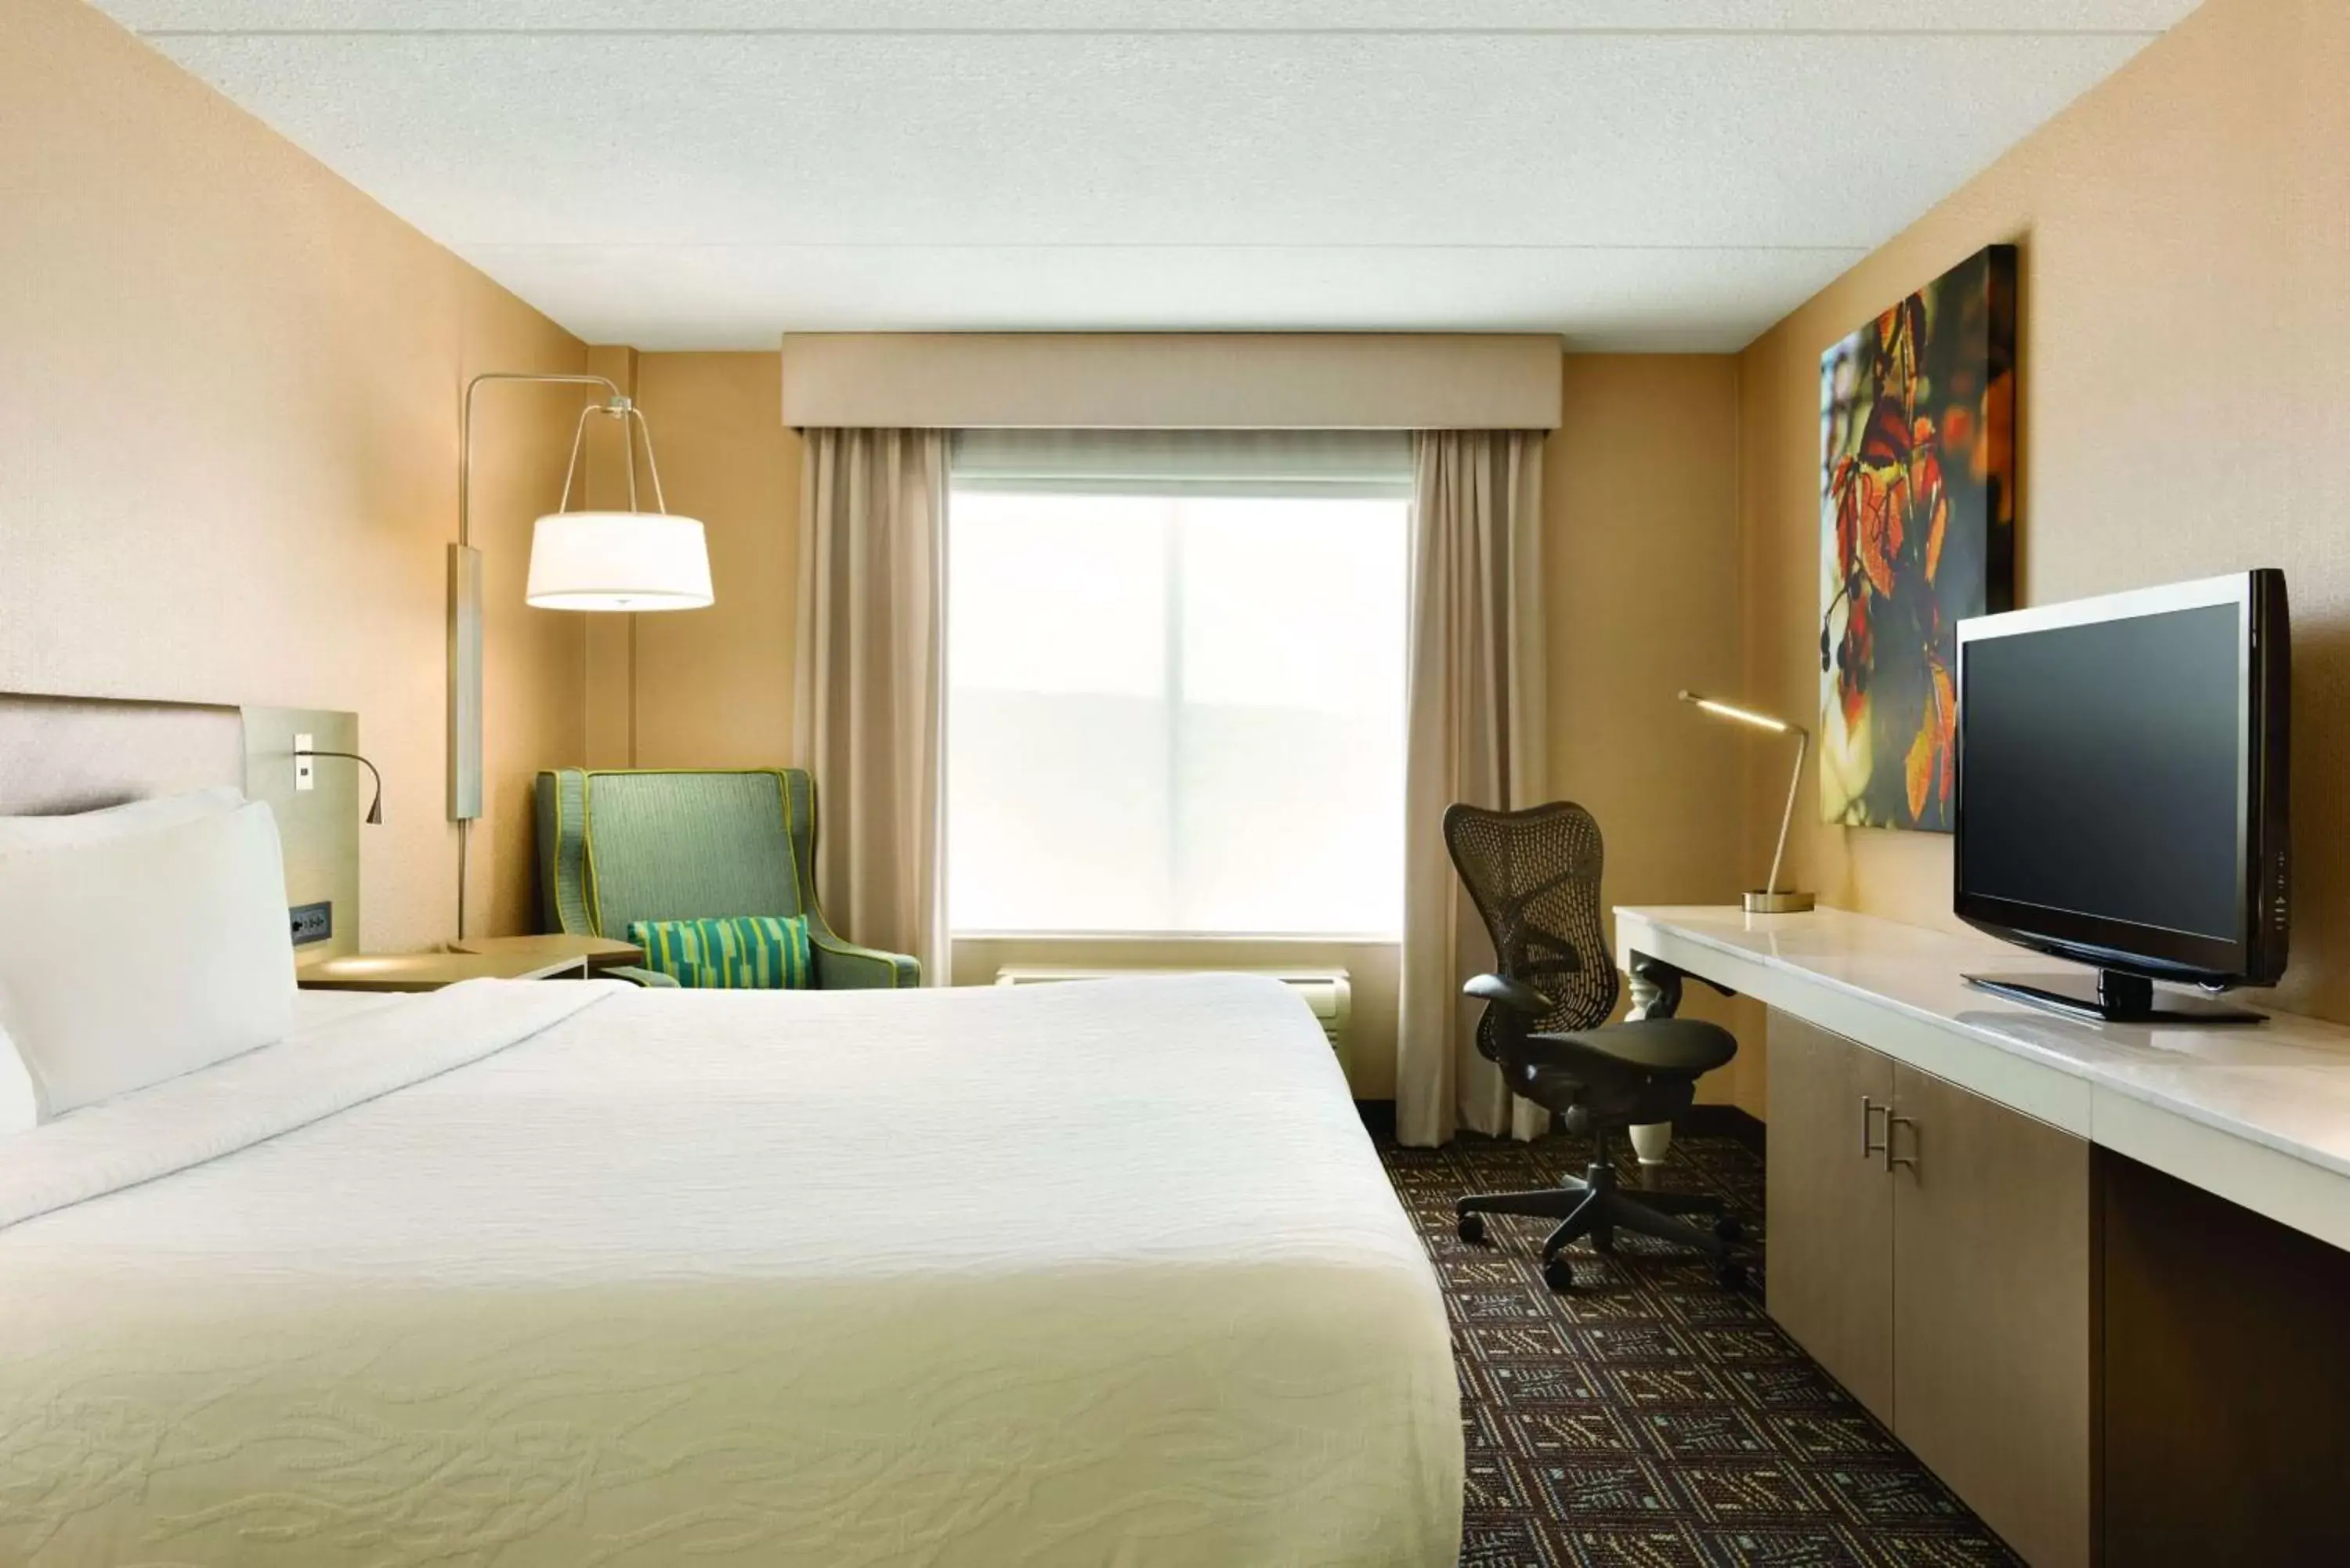 Bedroom, TV/Entertainment Center in Hilton Garden Inn Niagara-on-the-Lake